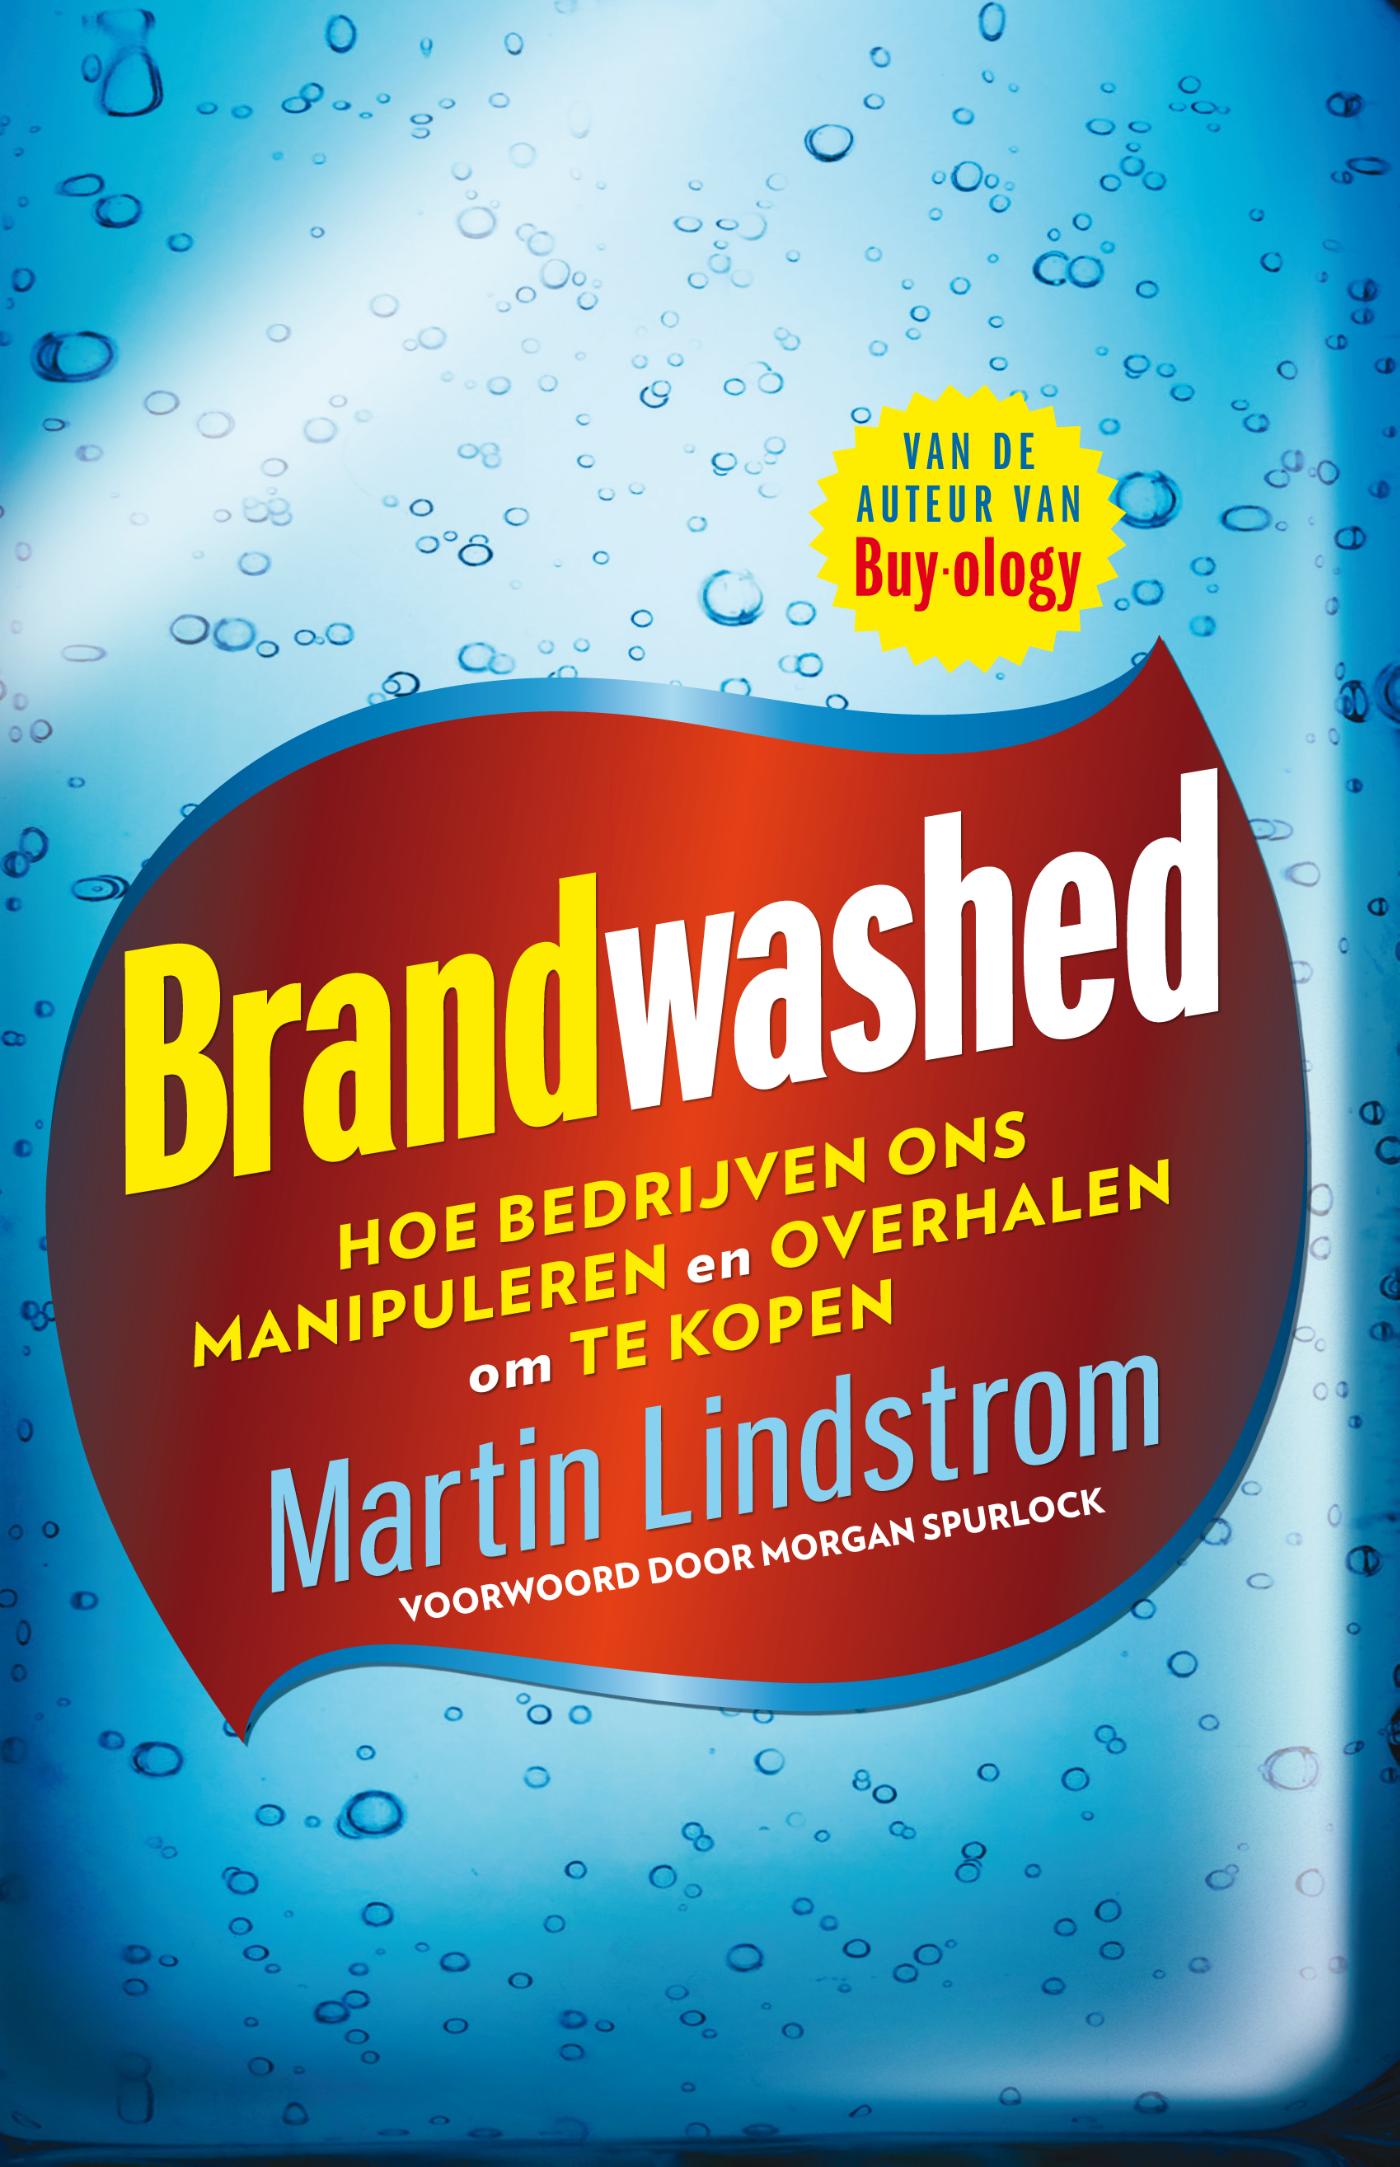 Brandwashed (Ebook)